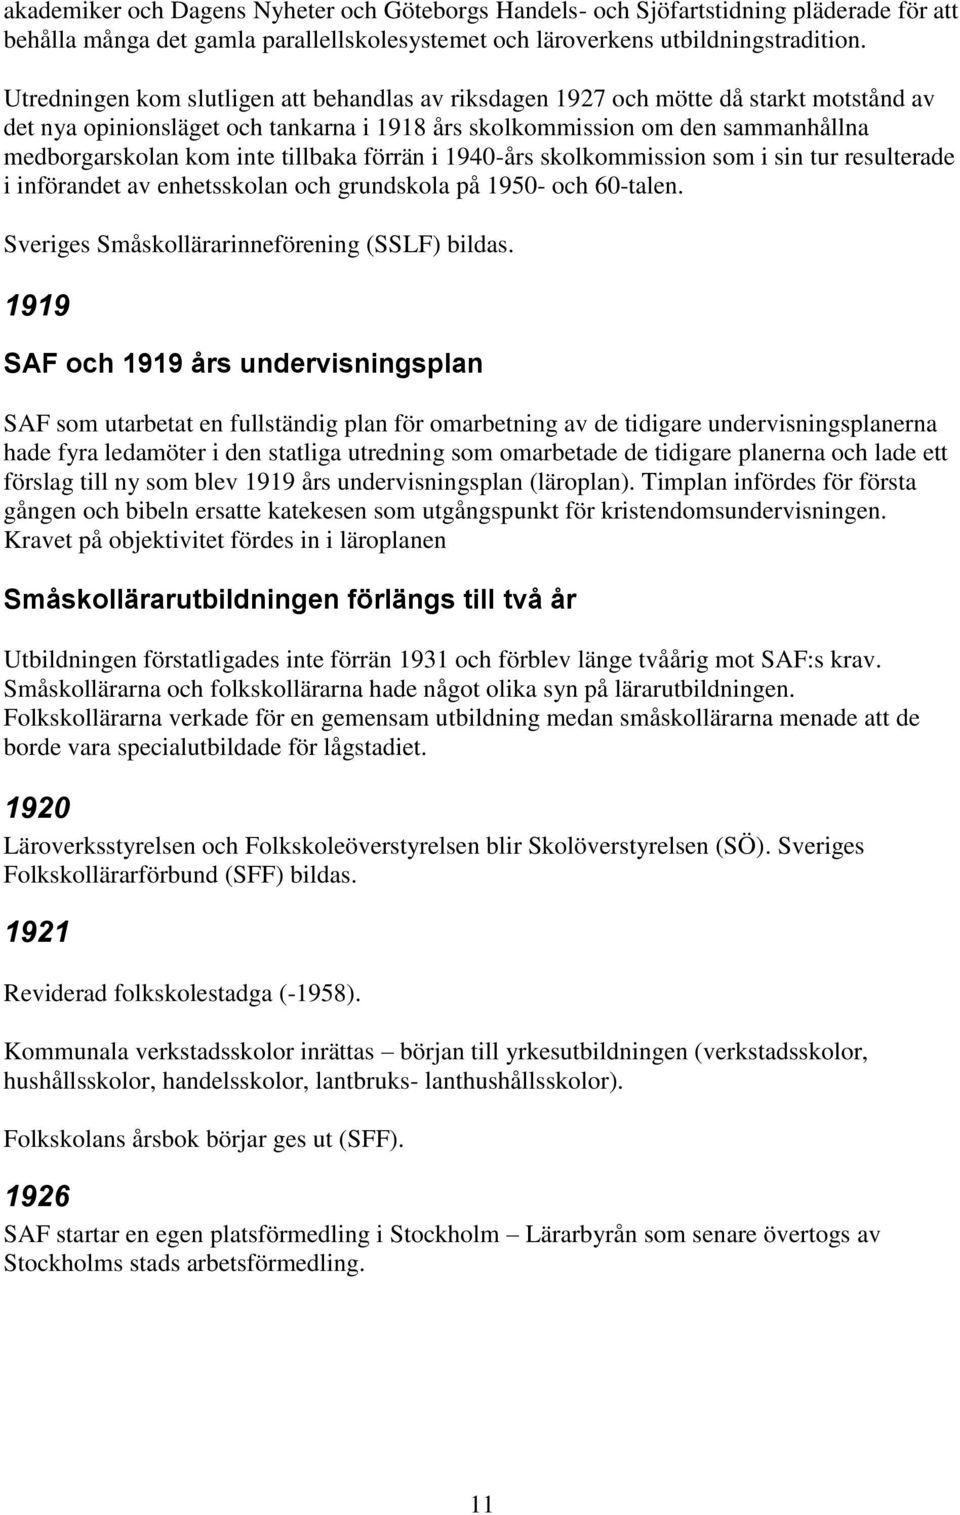 tillbaka förrän i 1940-års skolkommission som i sin tur resulterade i införandet av enhetsskolan och grundskola på 1950- och 60-talen. Sveriges Småskollärarinneförening (SSLF) bildas.